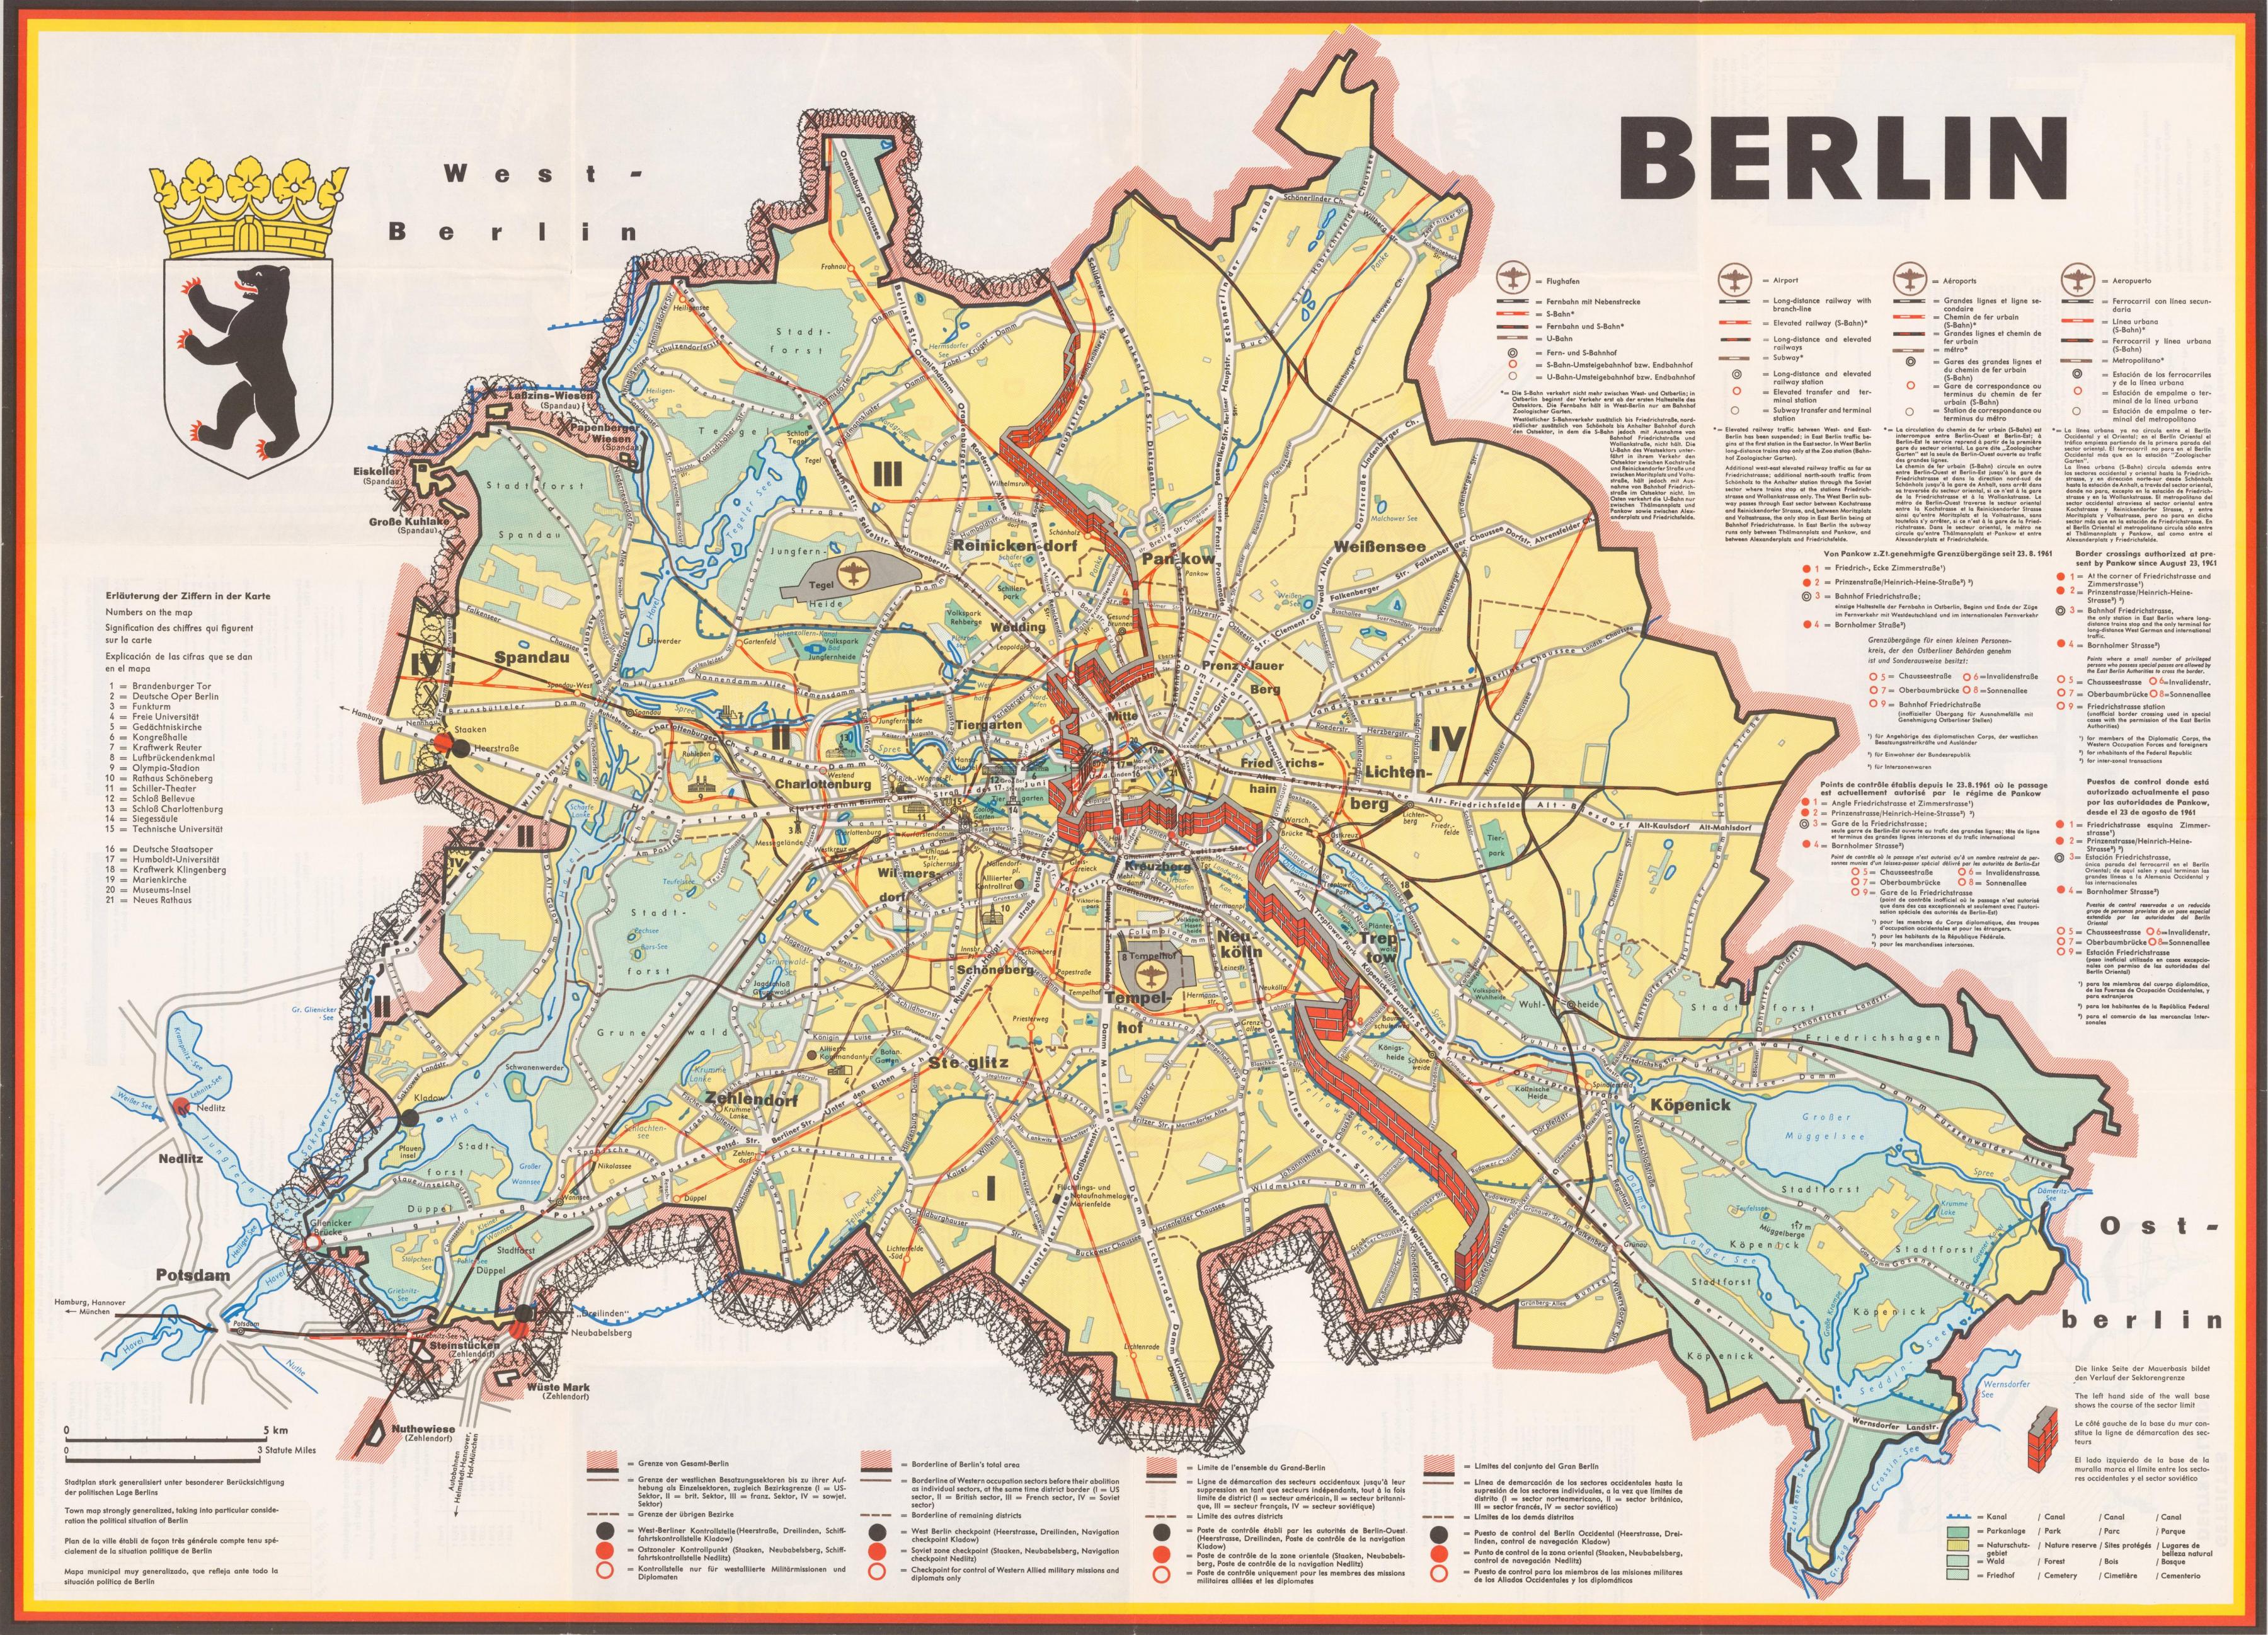 Berlin Wall Trail Map